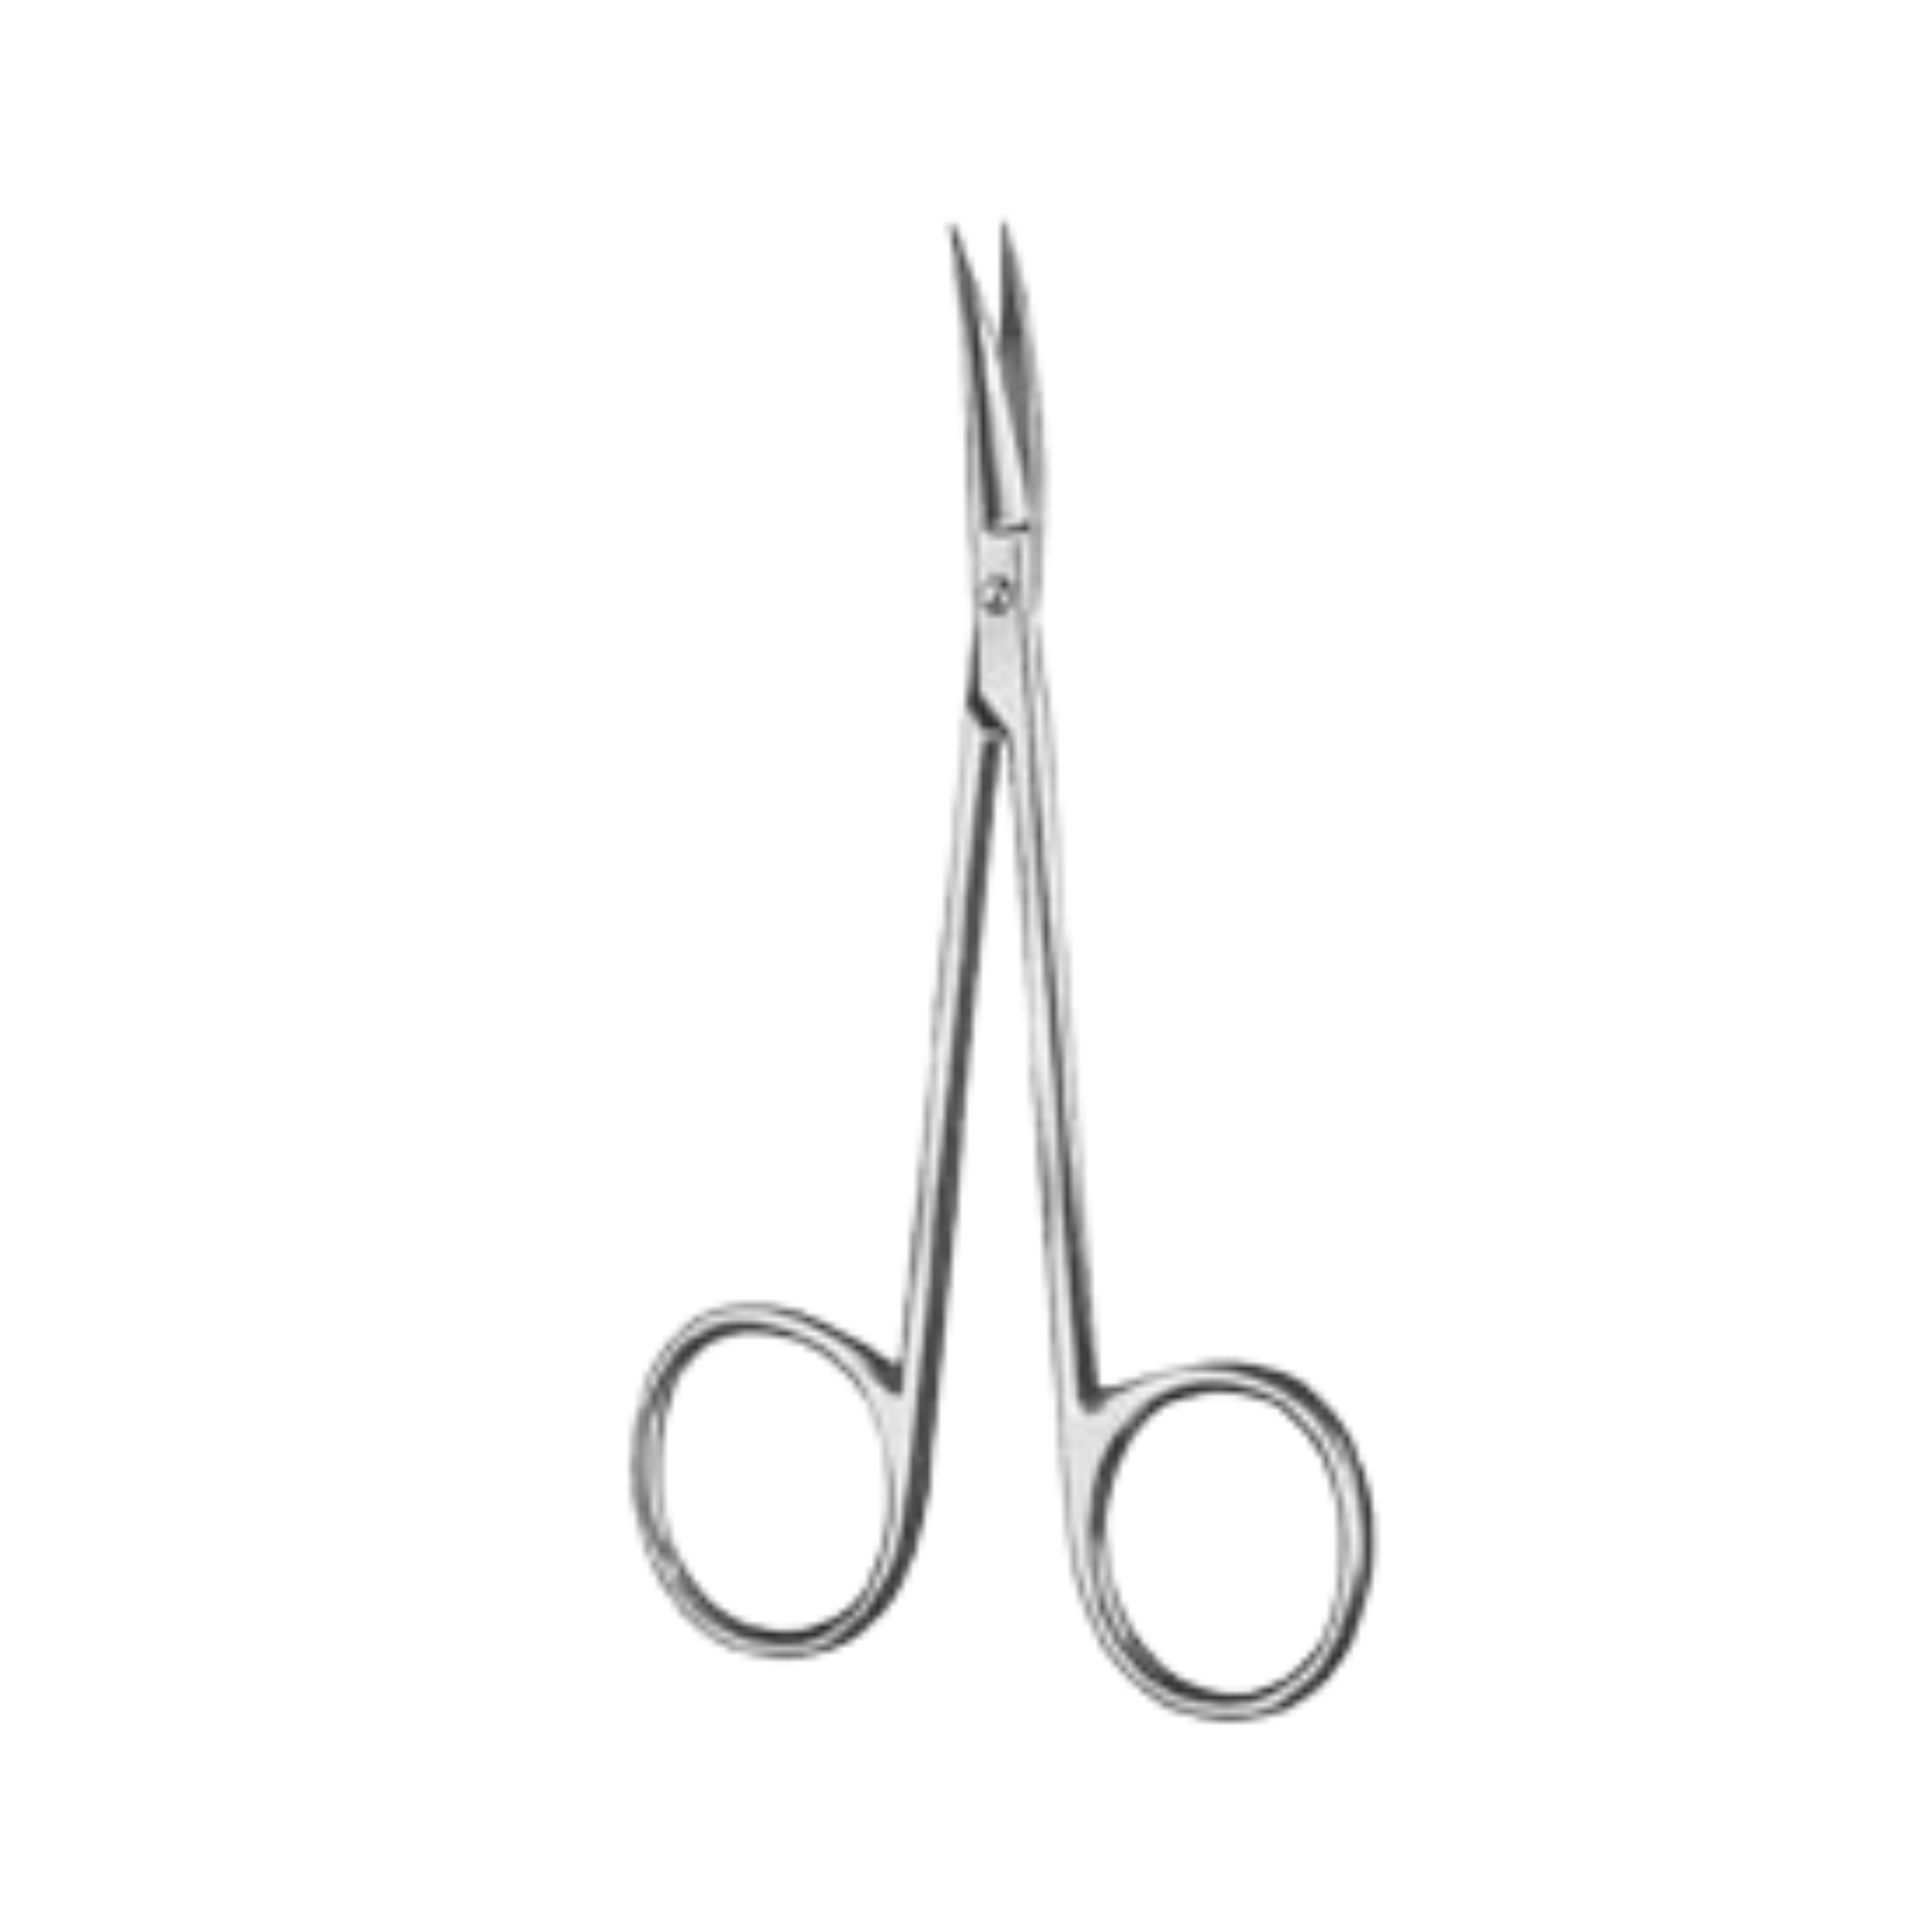 Iris Scissors- SH/SH, Curved, 9 cm